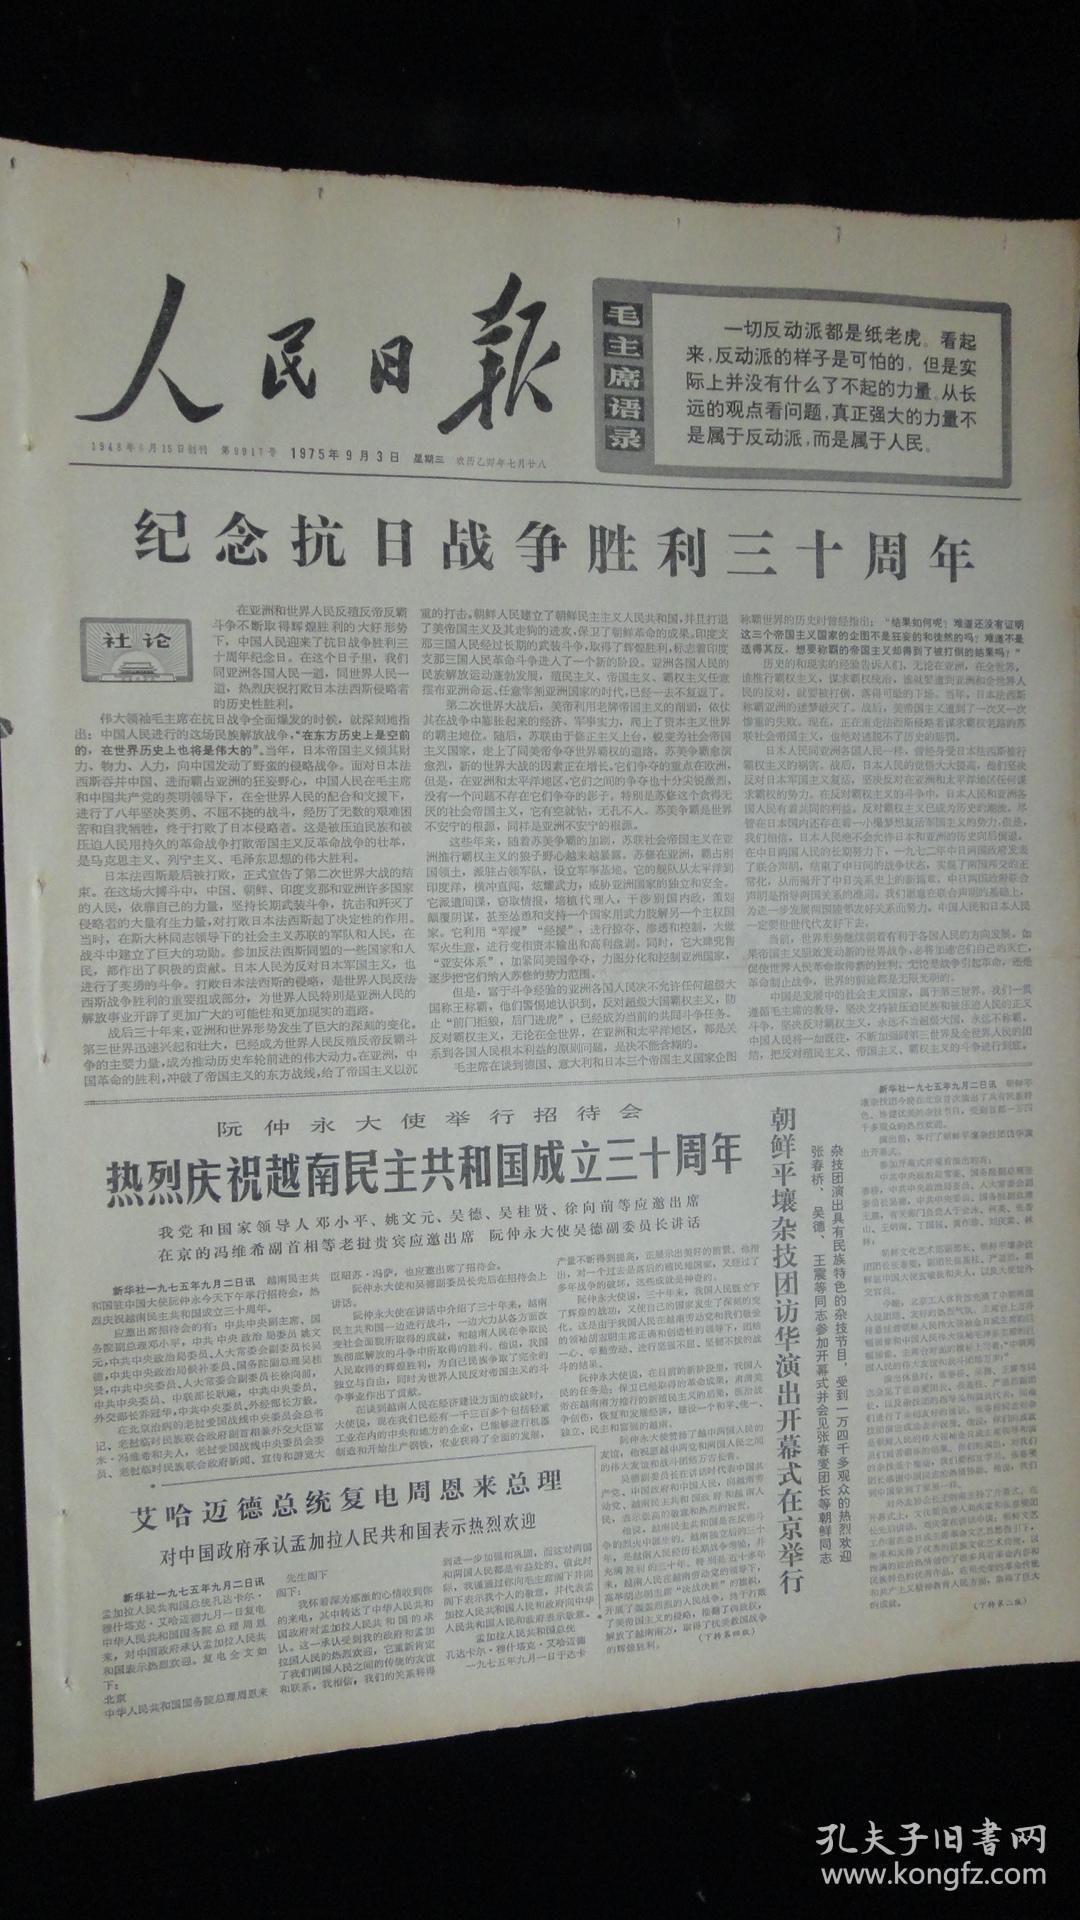 【报纸】人民日报 1975年9月3日【社论:纪念抗日战争胜利三十周年】